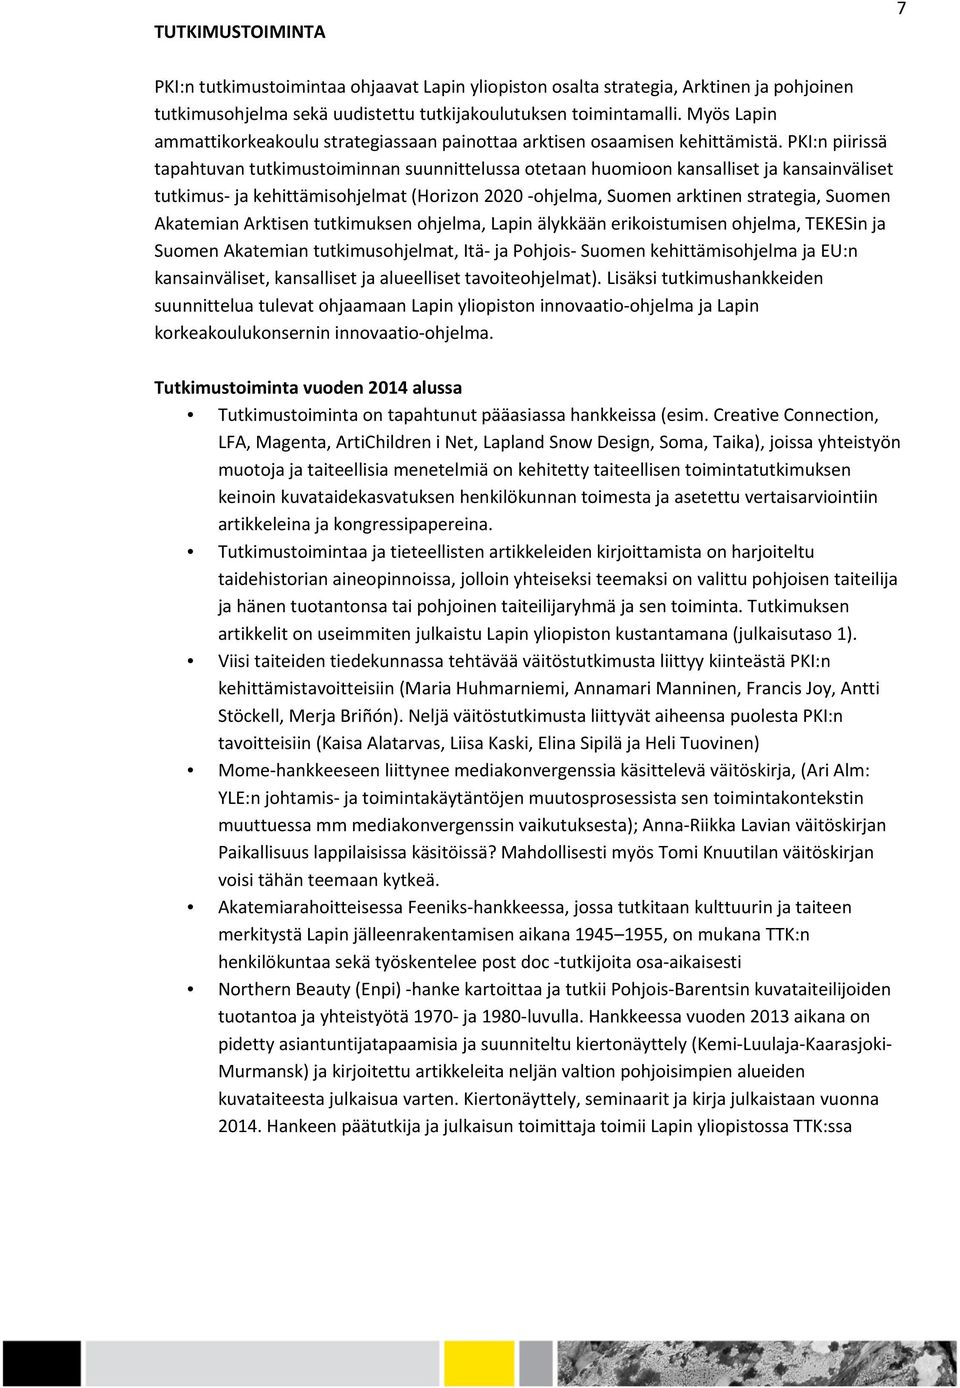 PKI:n piirissä tapahtuvan tutkimustoiminnan suunnittelussa otetaan huomioon kansalliset ja kansainväliset tutkimus- ja kehittämisohjelmat (Horizon 2020 - ohjelma, Suomen arktinen strategia, Suomen